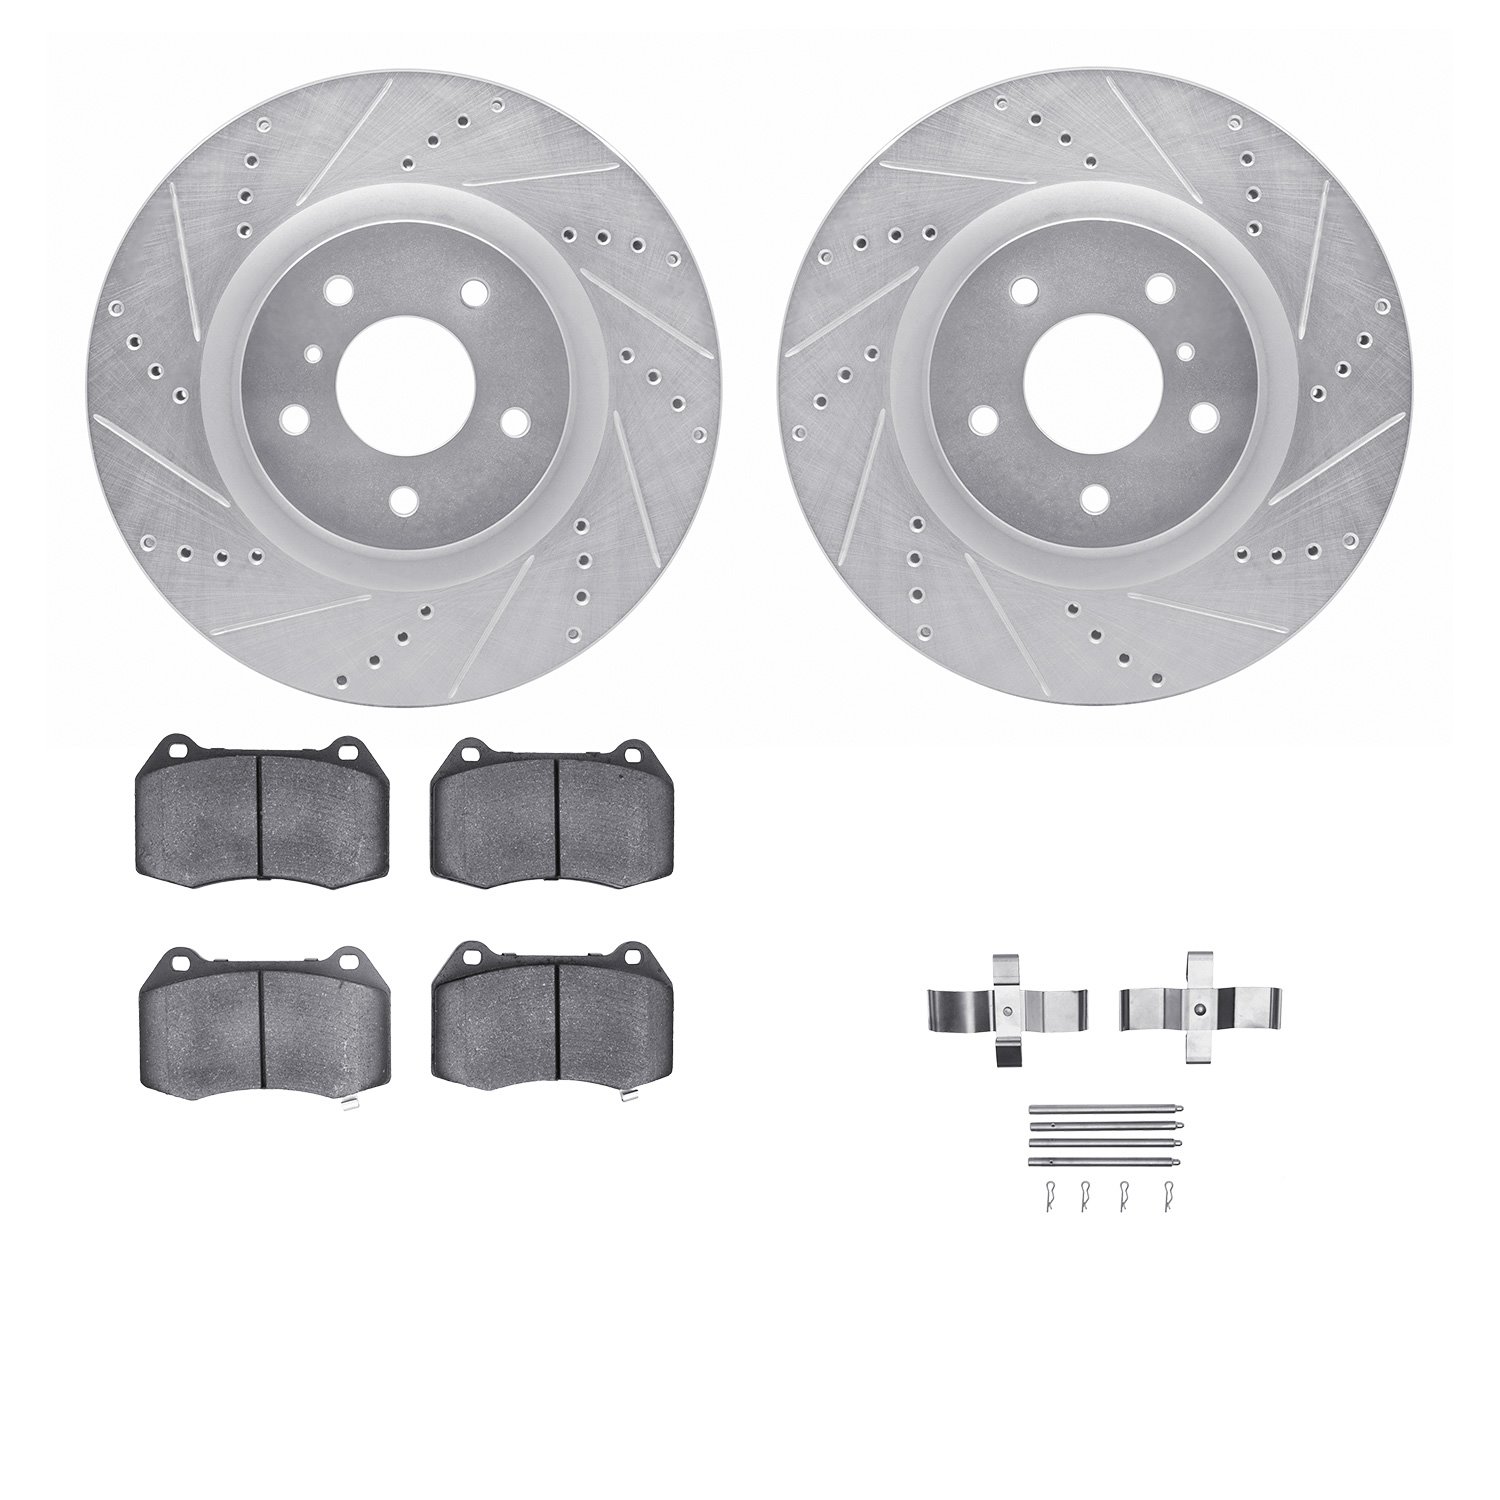 7612-68001 Drilled/Slotted Brake Rotors w/5000 Euro Ceramic Brake Pads Kit & Hardware [Silver], 2003-2008 Infiniti/Nissan, Posit